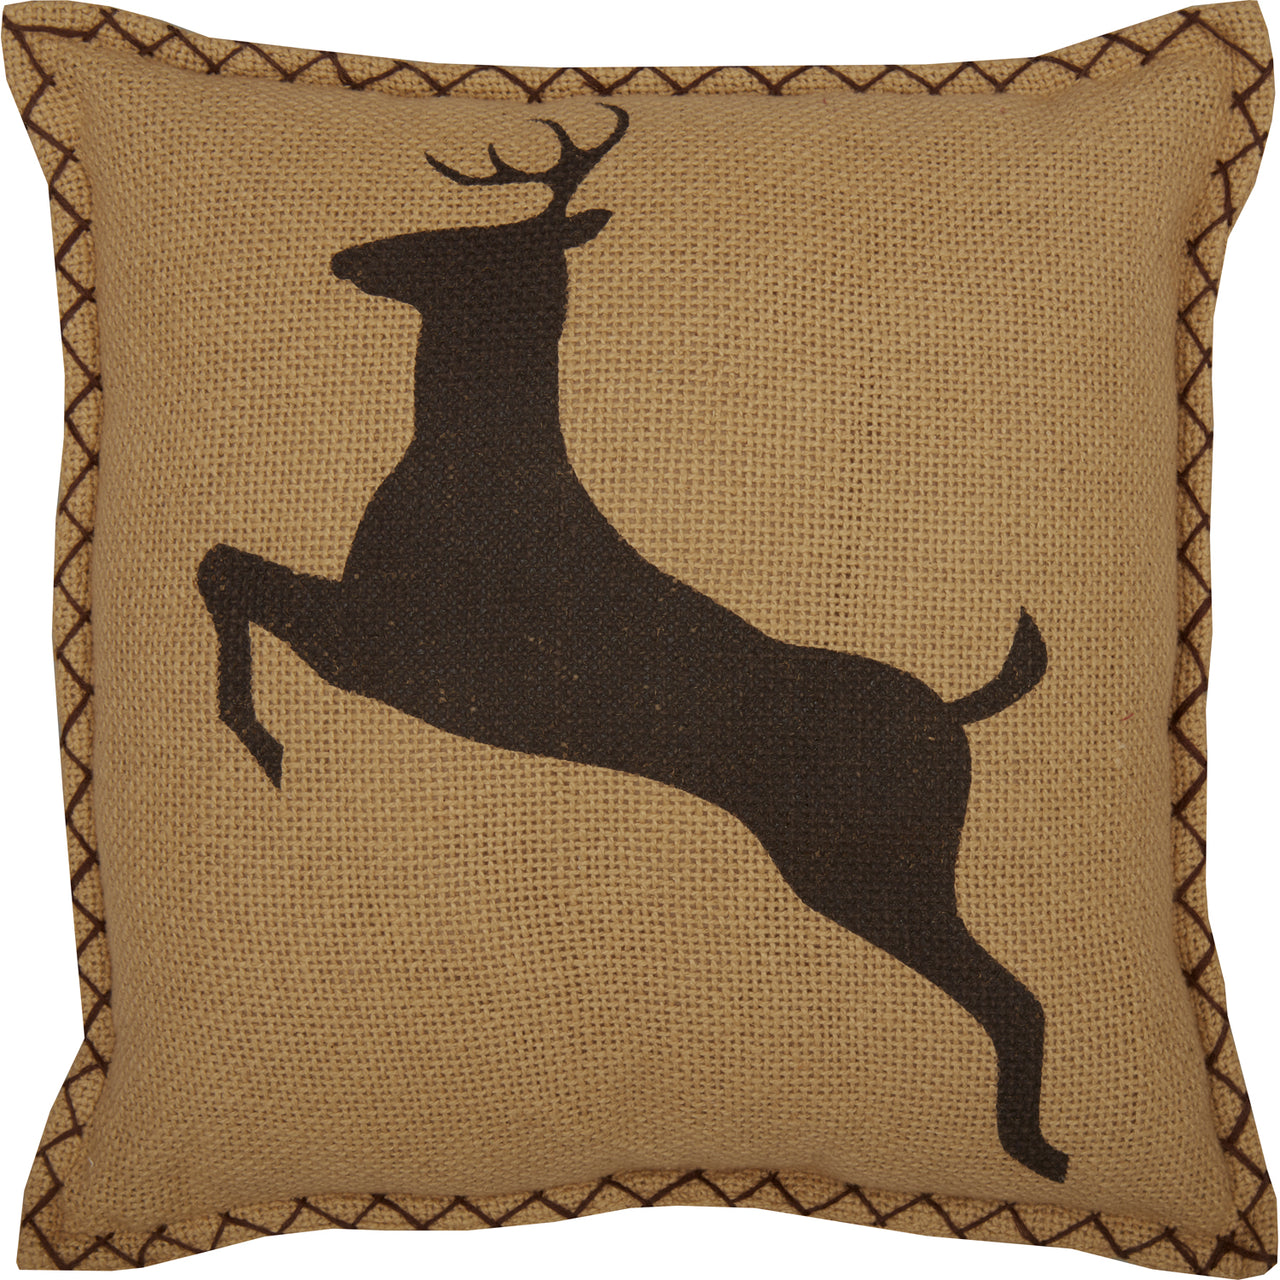 Dawson Star Deer Pillow 12x12 VHC Brands